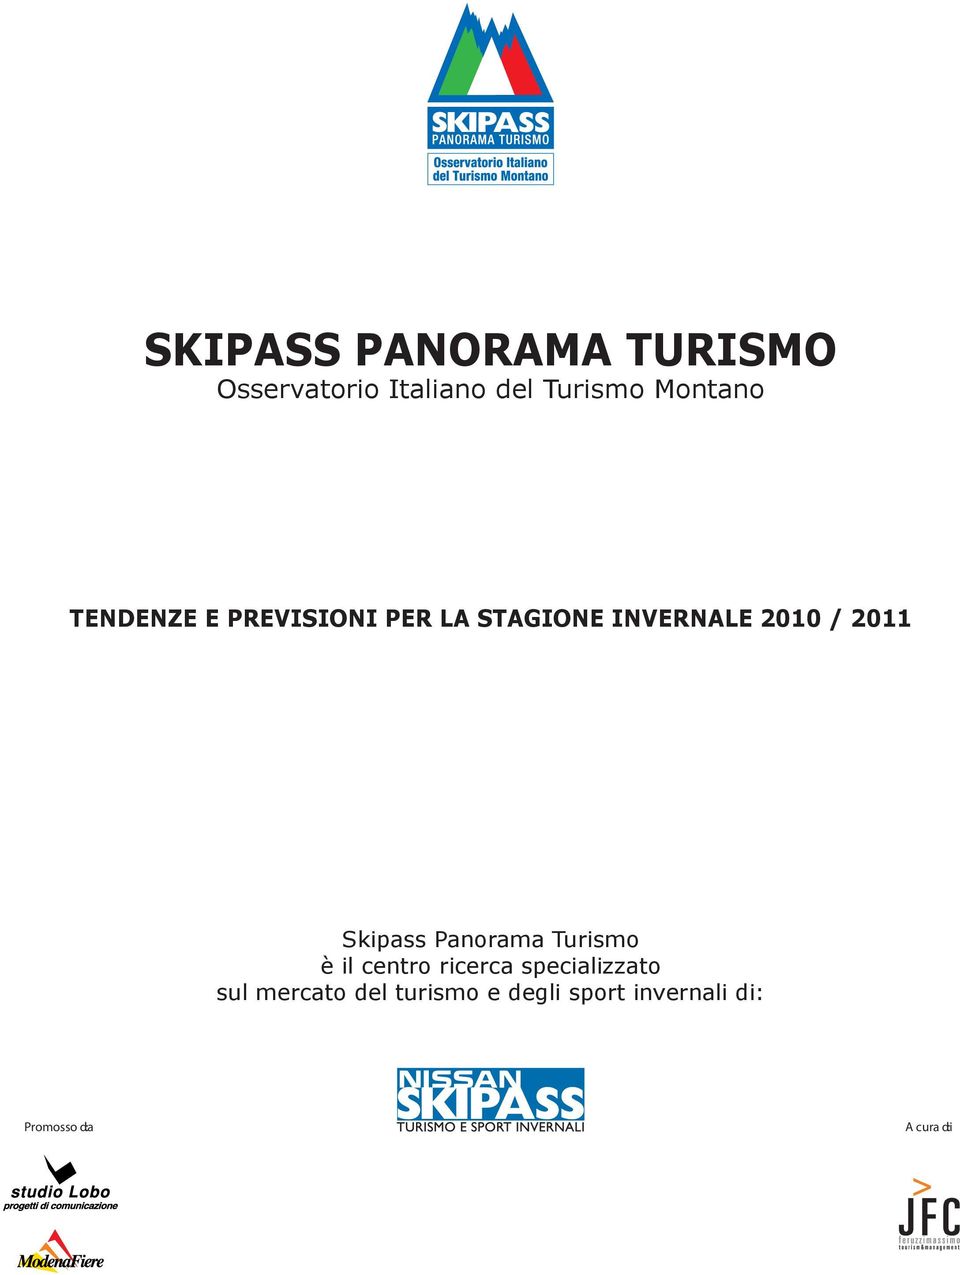 2011 Skipass Panorama Turismo è il centro ricerca specializzato